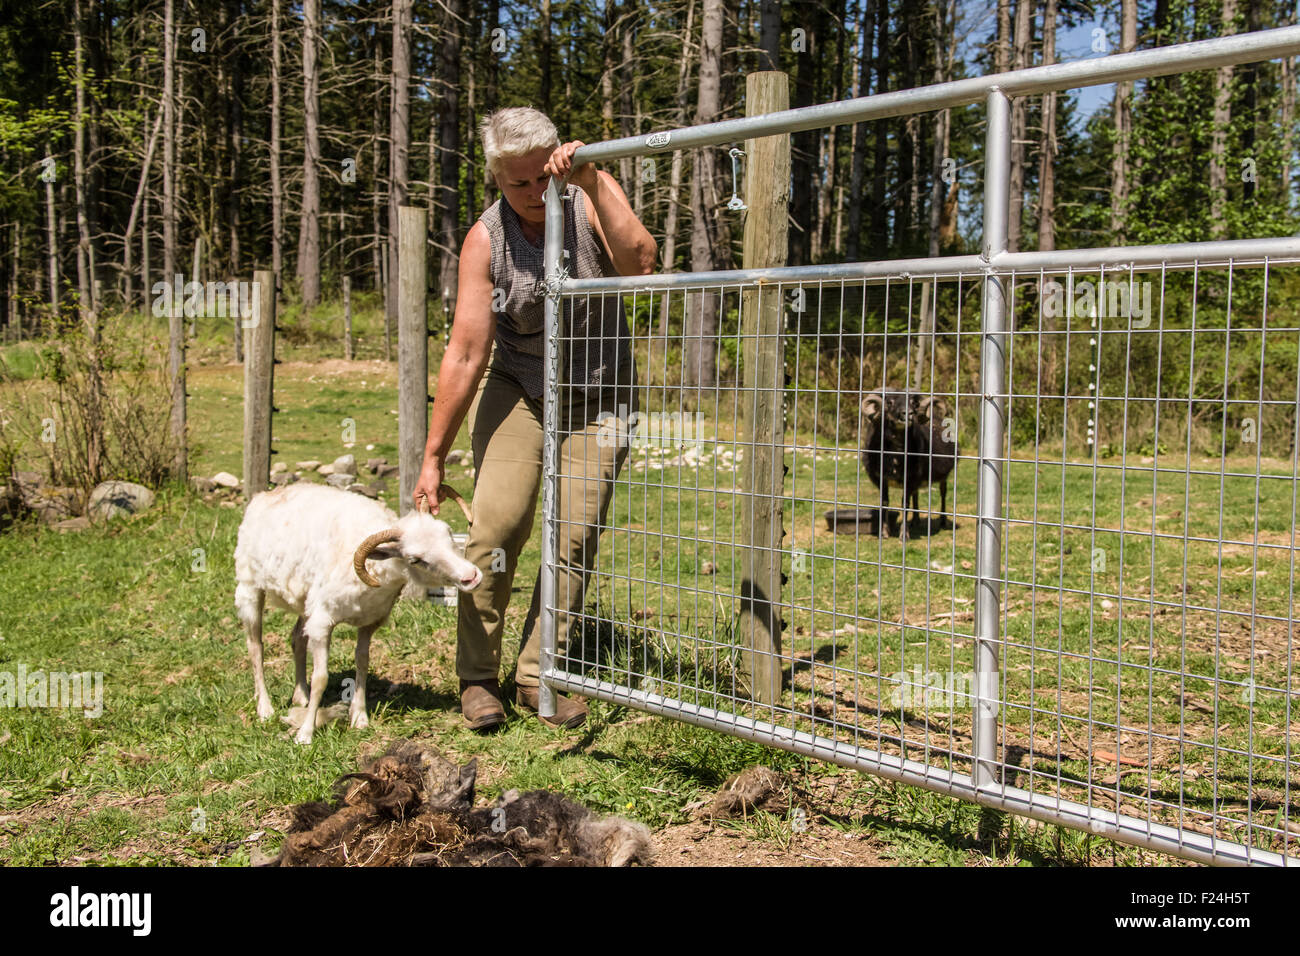 La donna sta tentando di ottenere un patrimonio islandese razza di pecore torna nella sua penna dopo il suo taglio, alla sua fattoria vicino a Garofano, WA Foto Stock